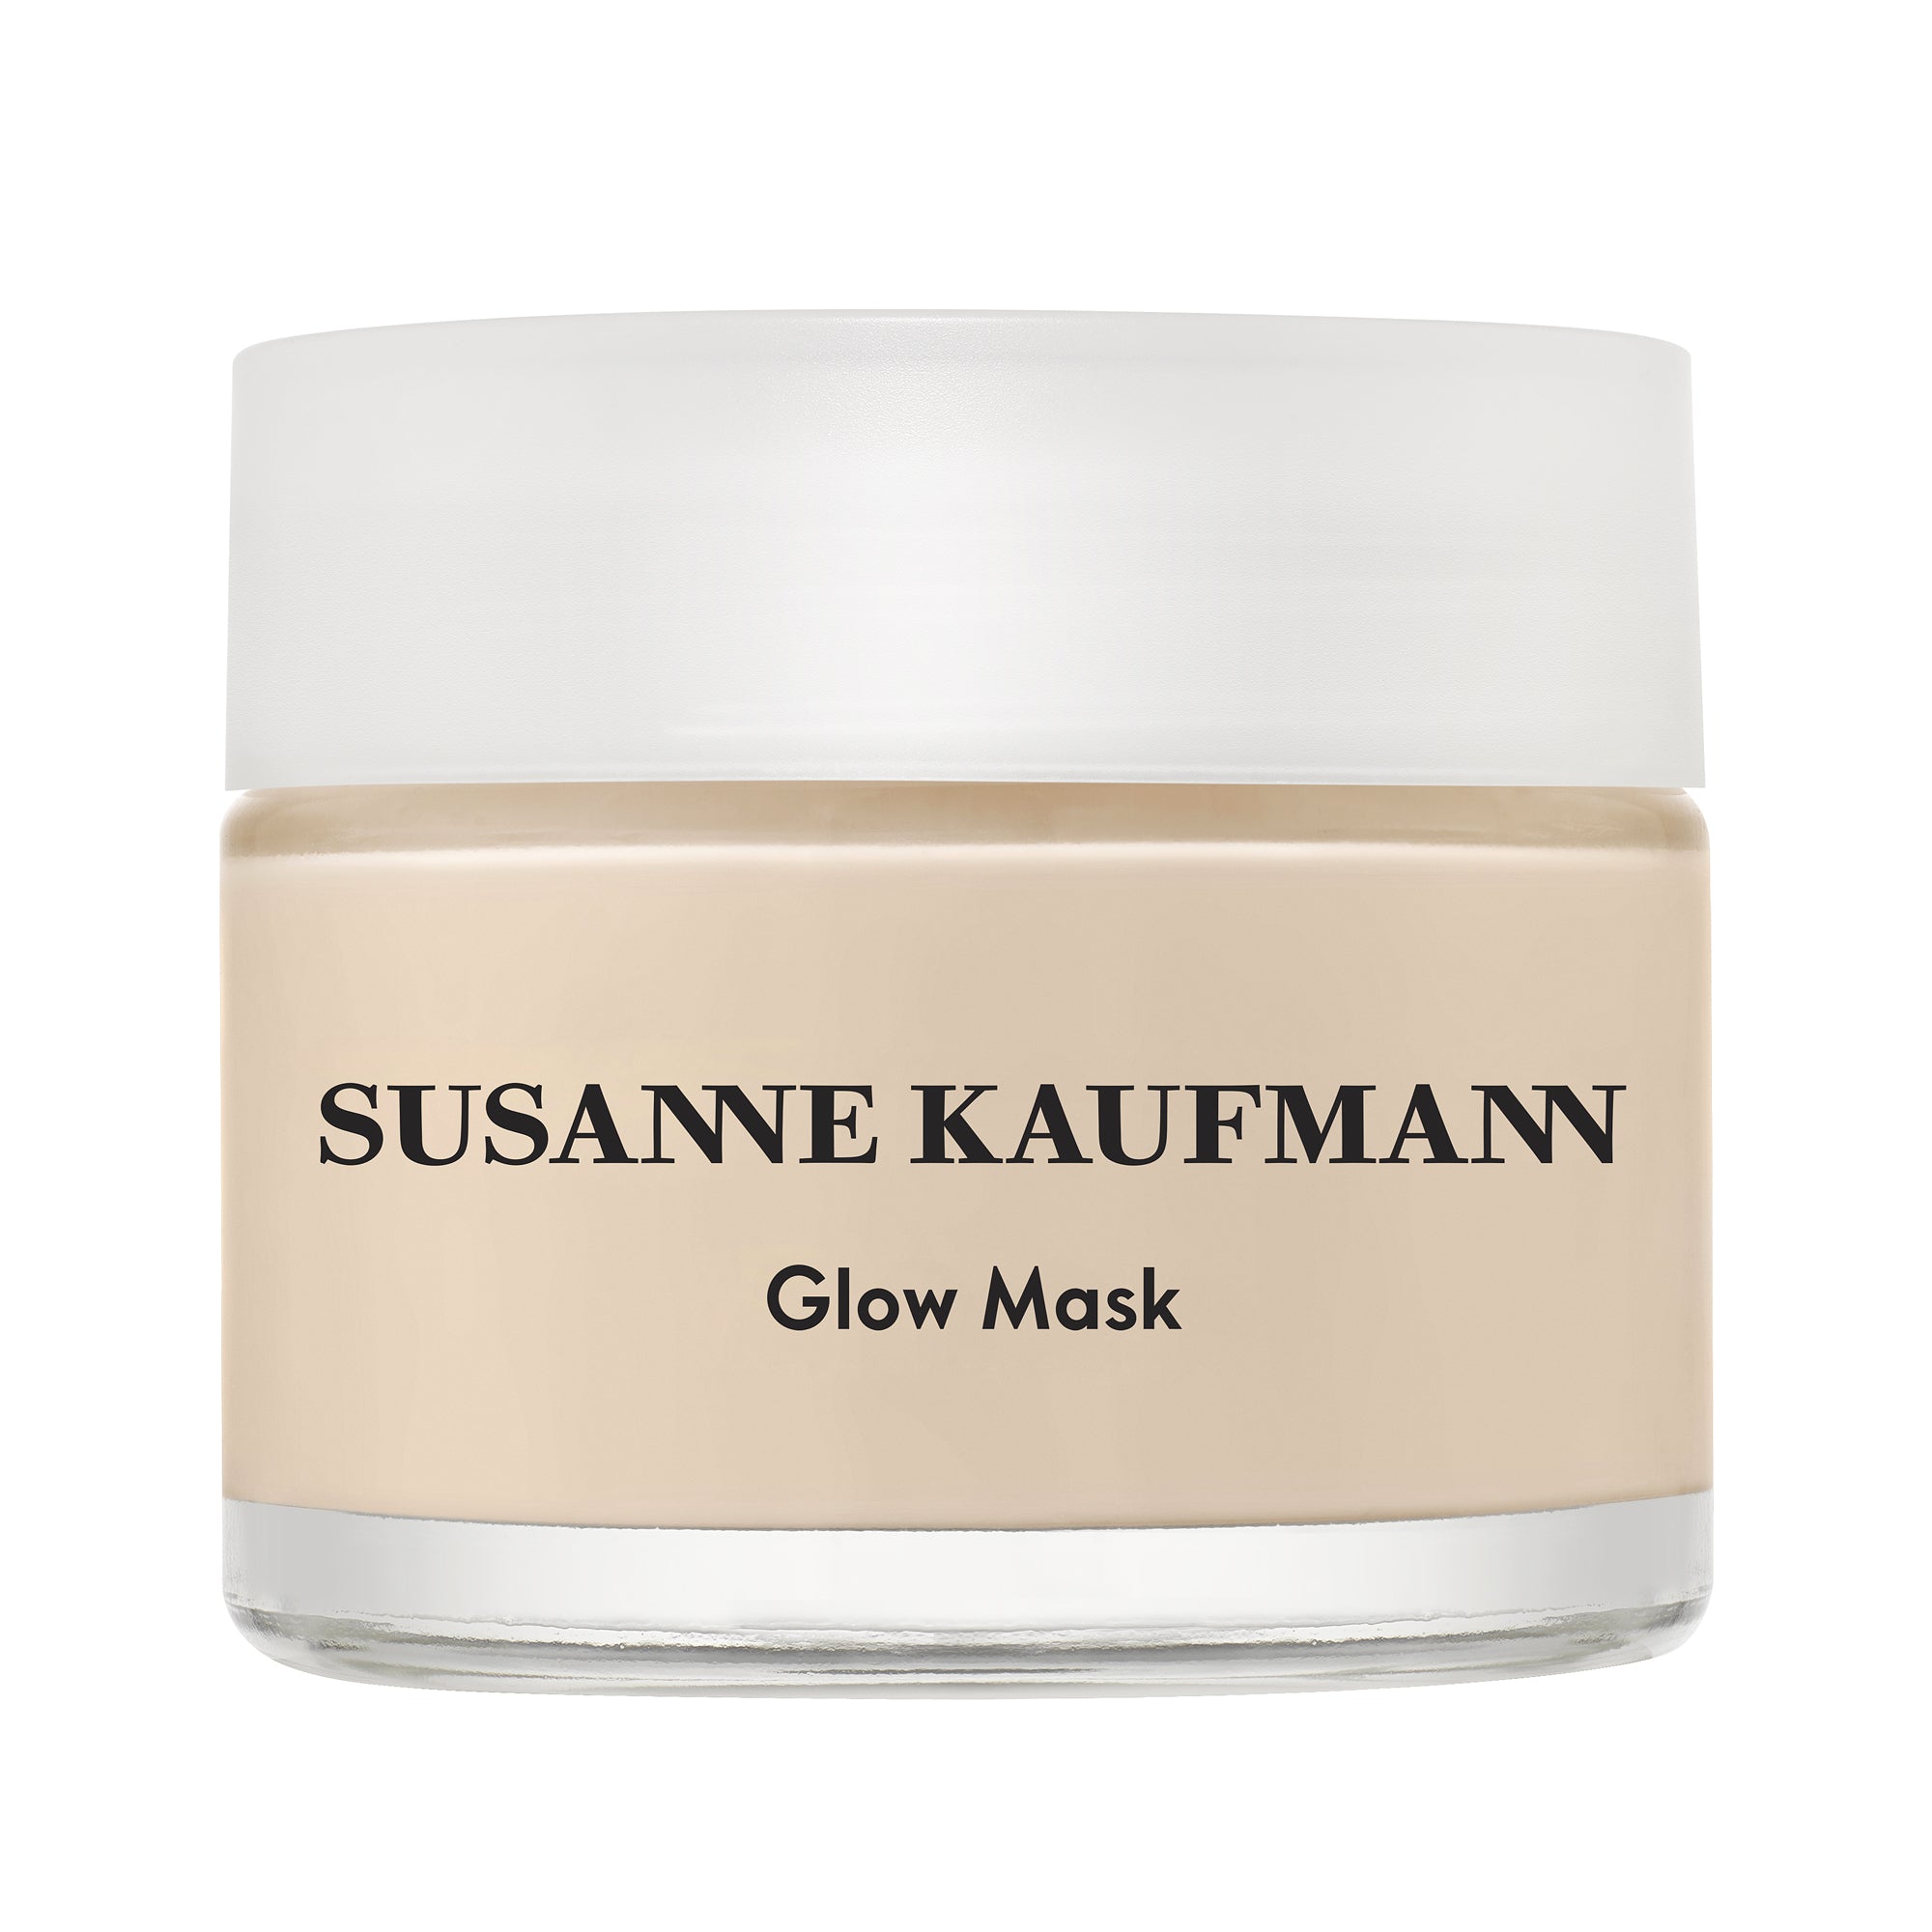 Indisponible - Masque éclat Glow mask Nicht verfügbar – Glow-Maske, Strahlenmaske - Susanne Kaufmann